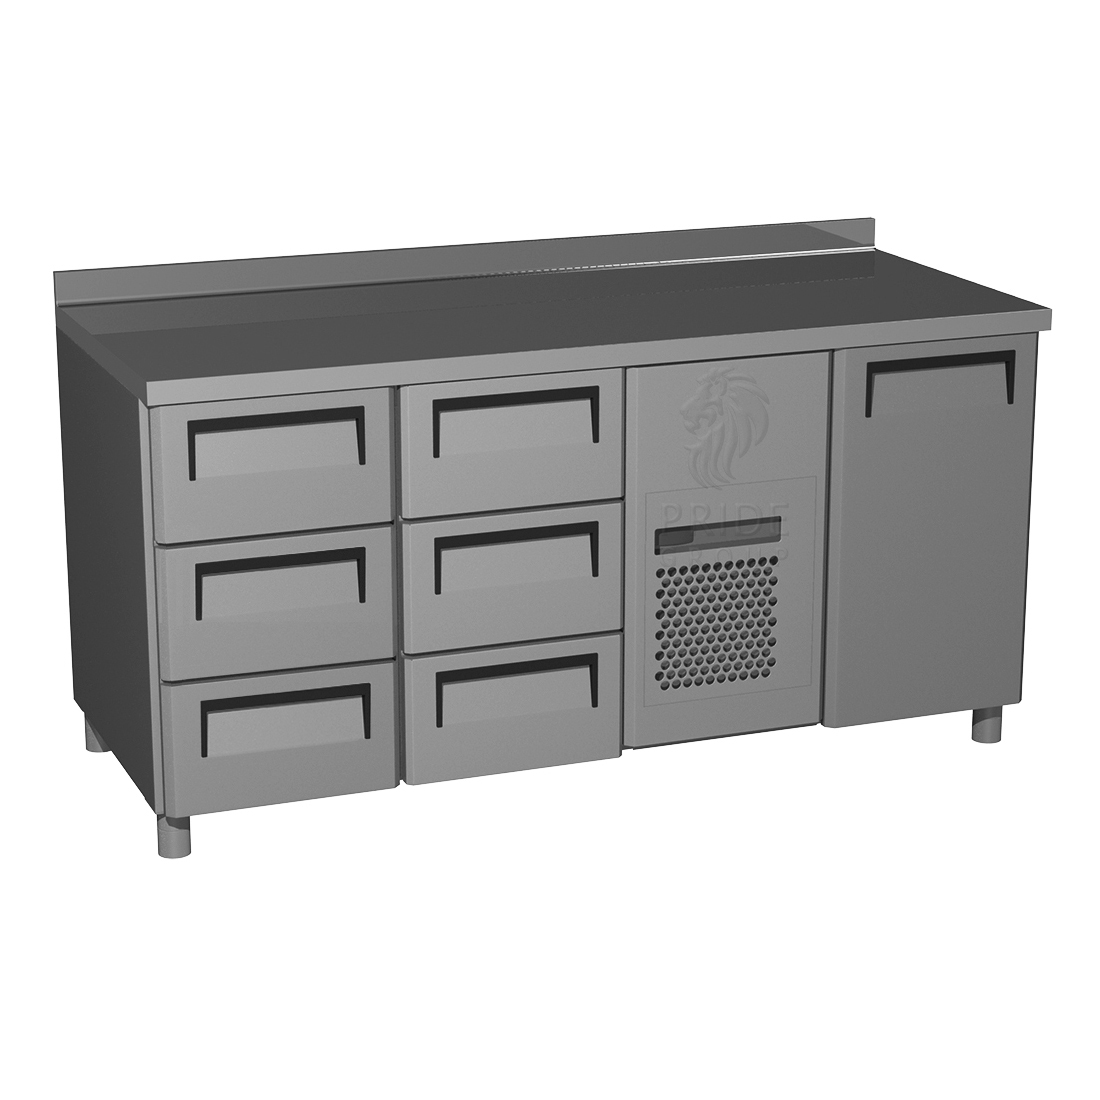 Холодильный стол T70 M3-1 0430 (3GN/NT Carboma) 1 дверь 6 ящиков